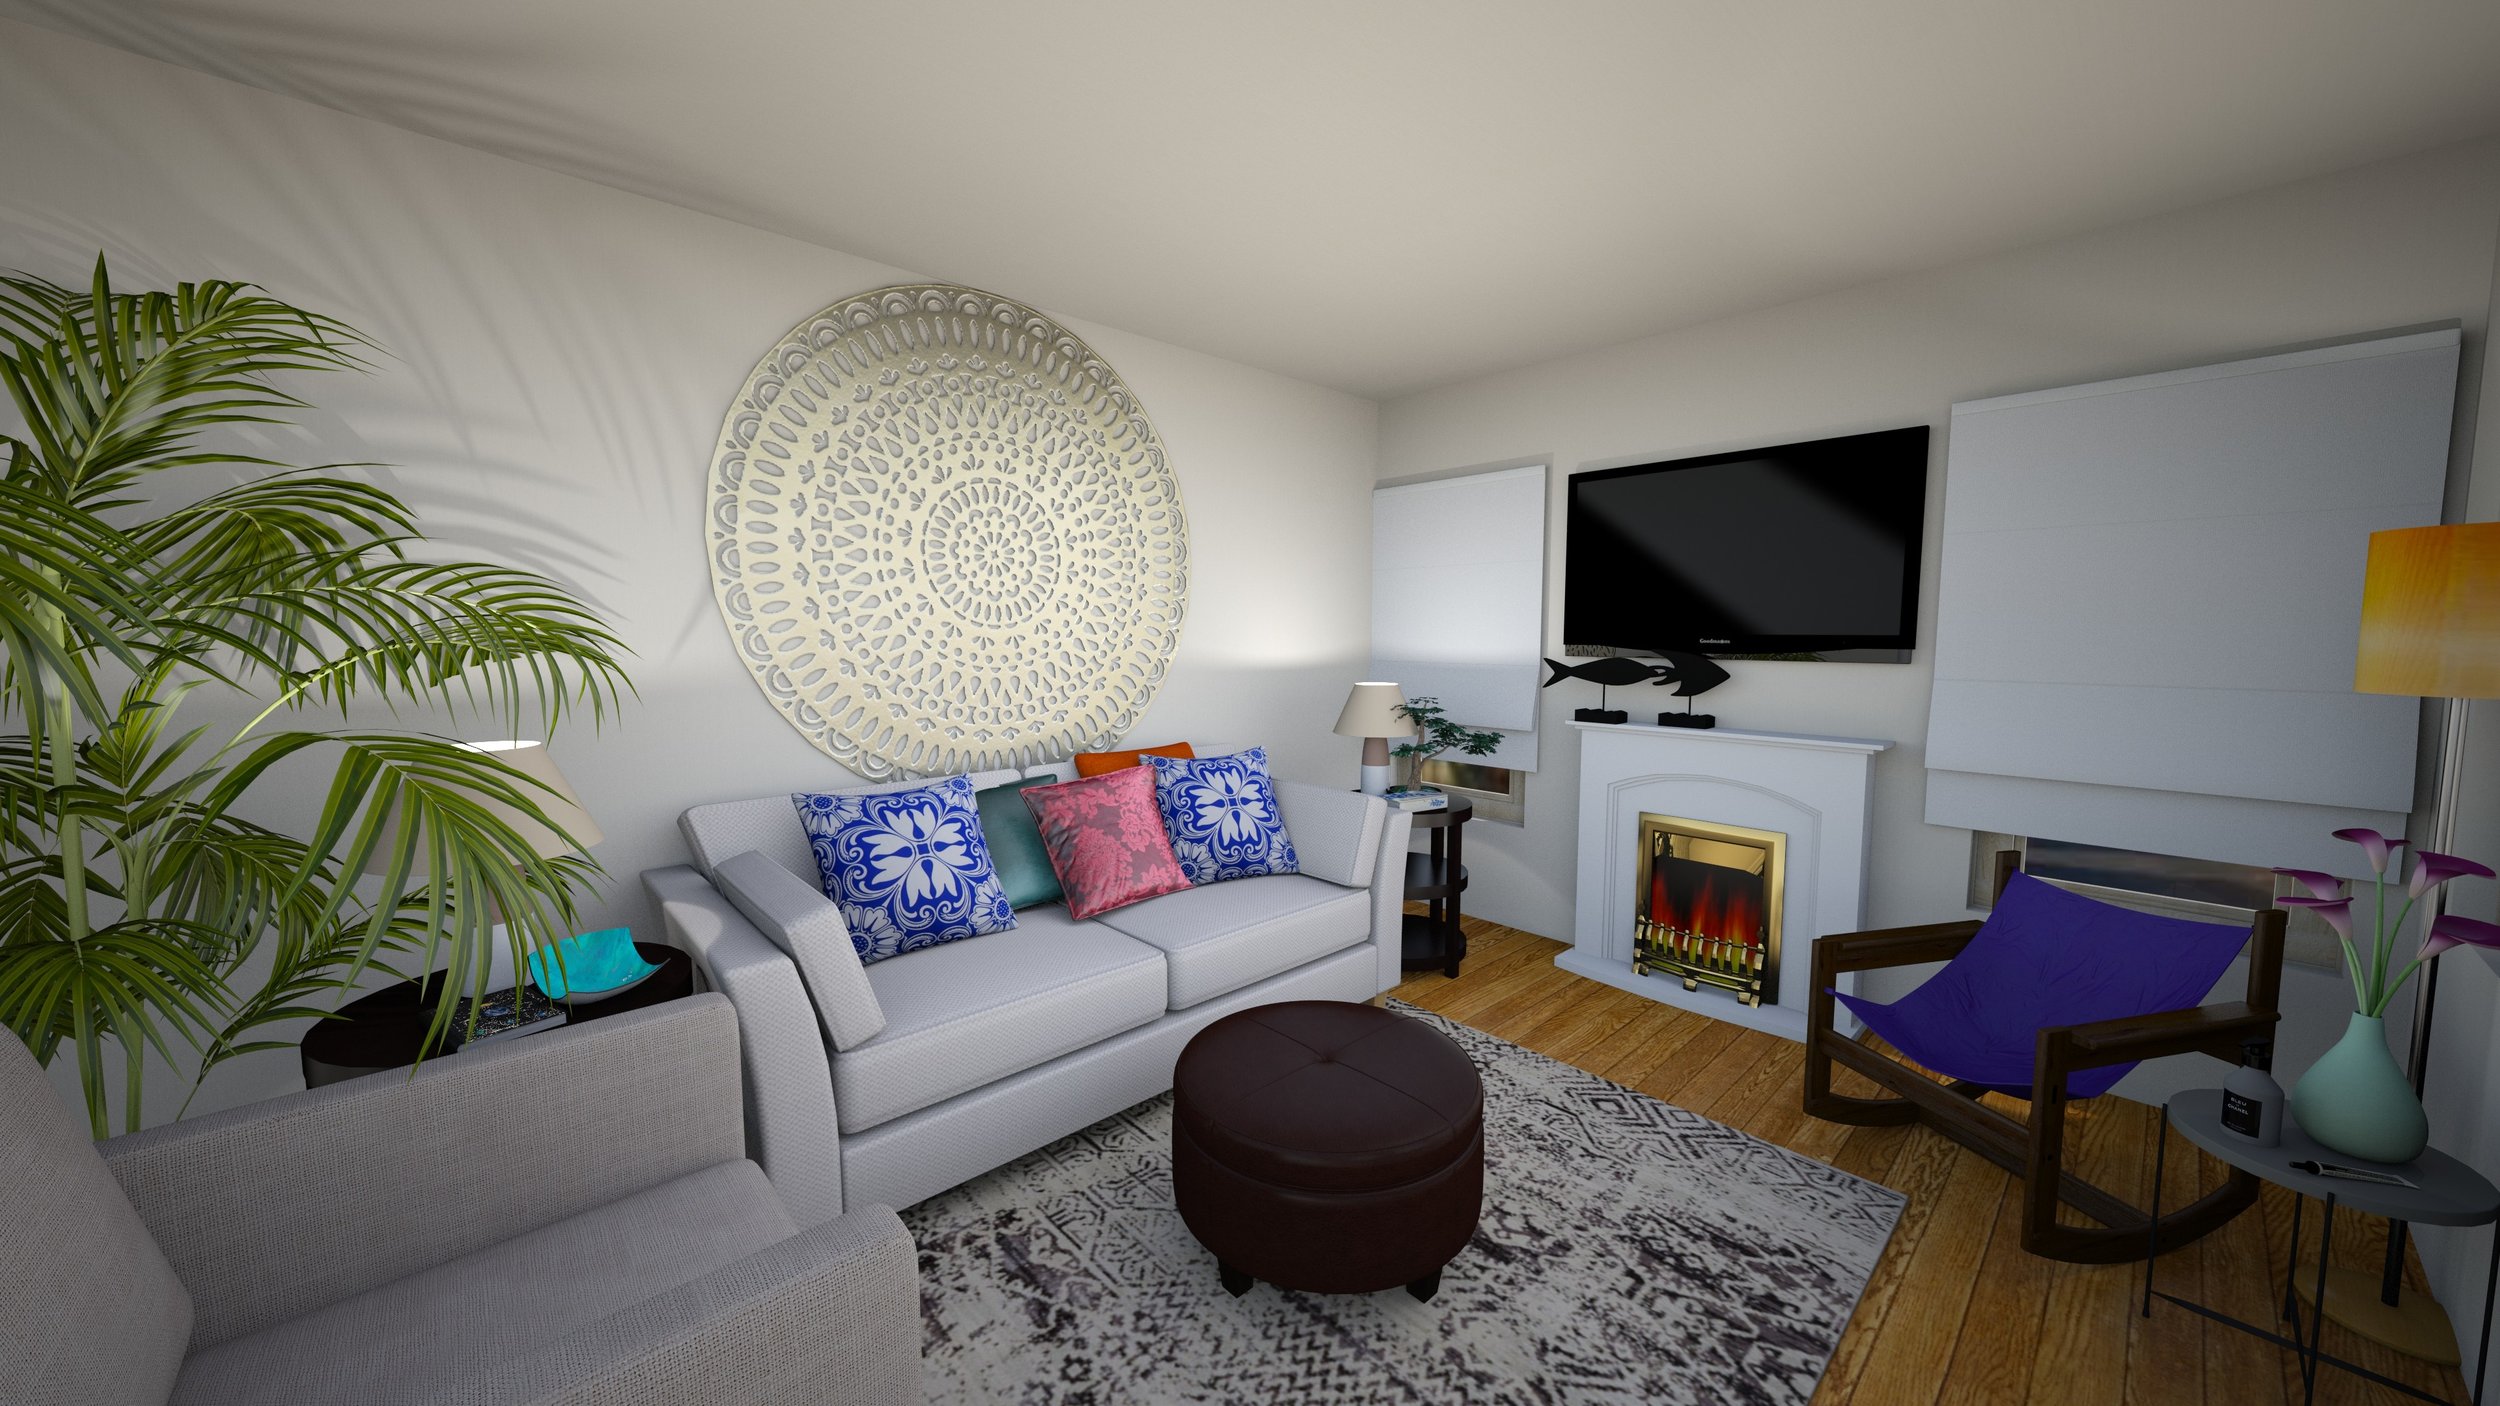 New Home Living Room - Julie Ann Rachelle Interior Design